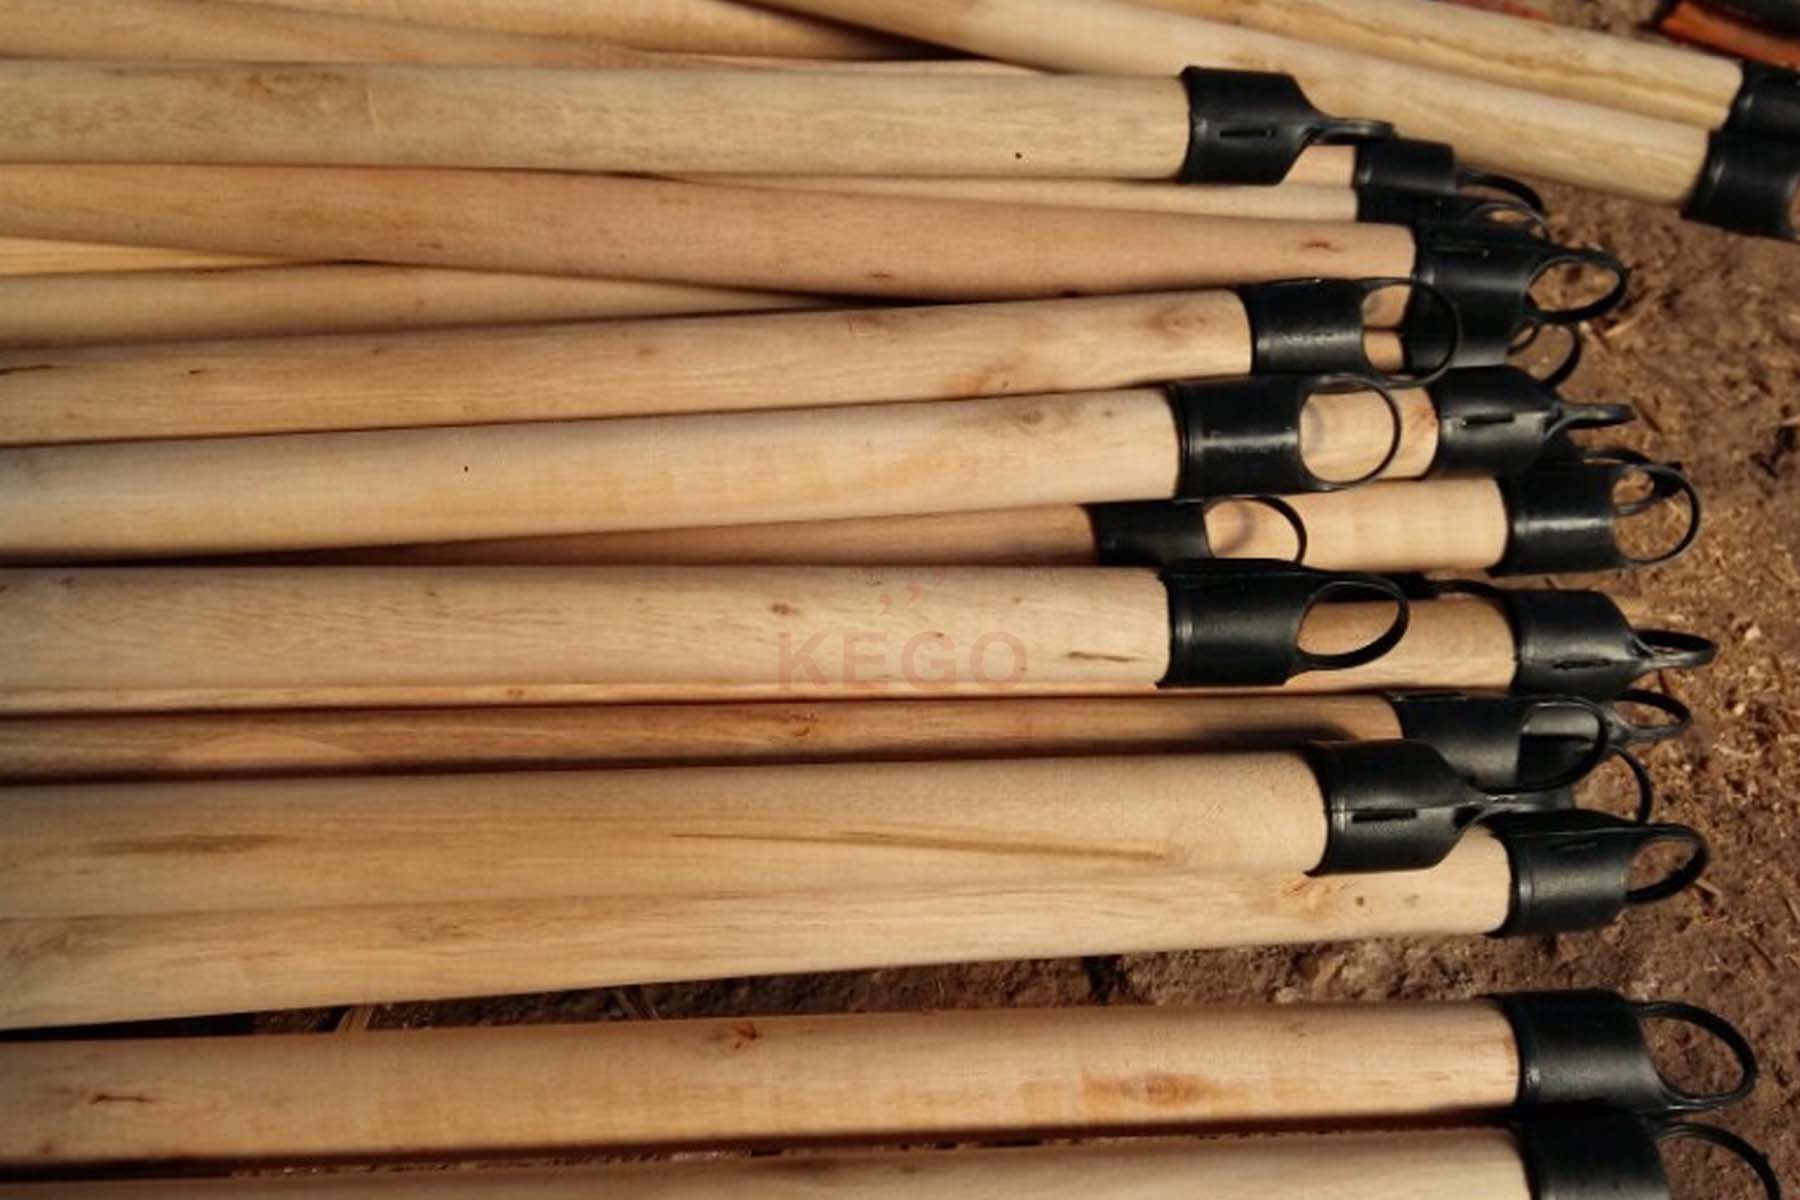 https://kego.com.vn/wp-content/uploads/2015/09/wooden-broom-handle-kego-14.jpg